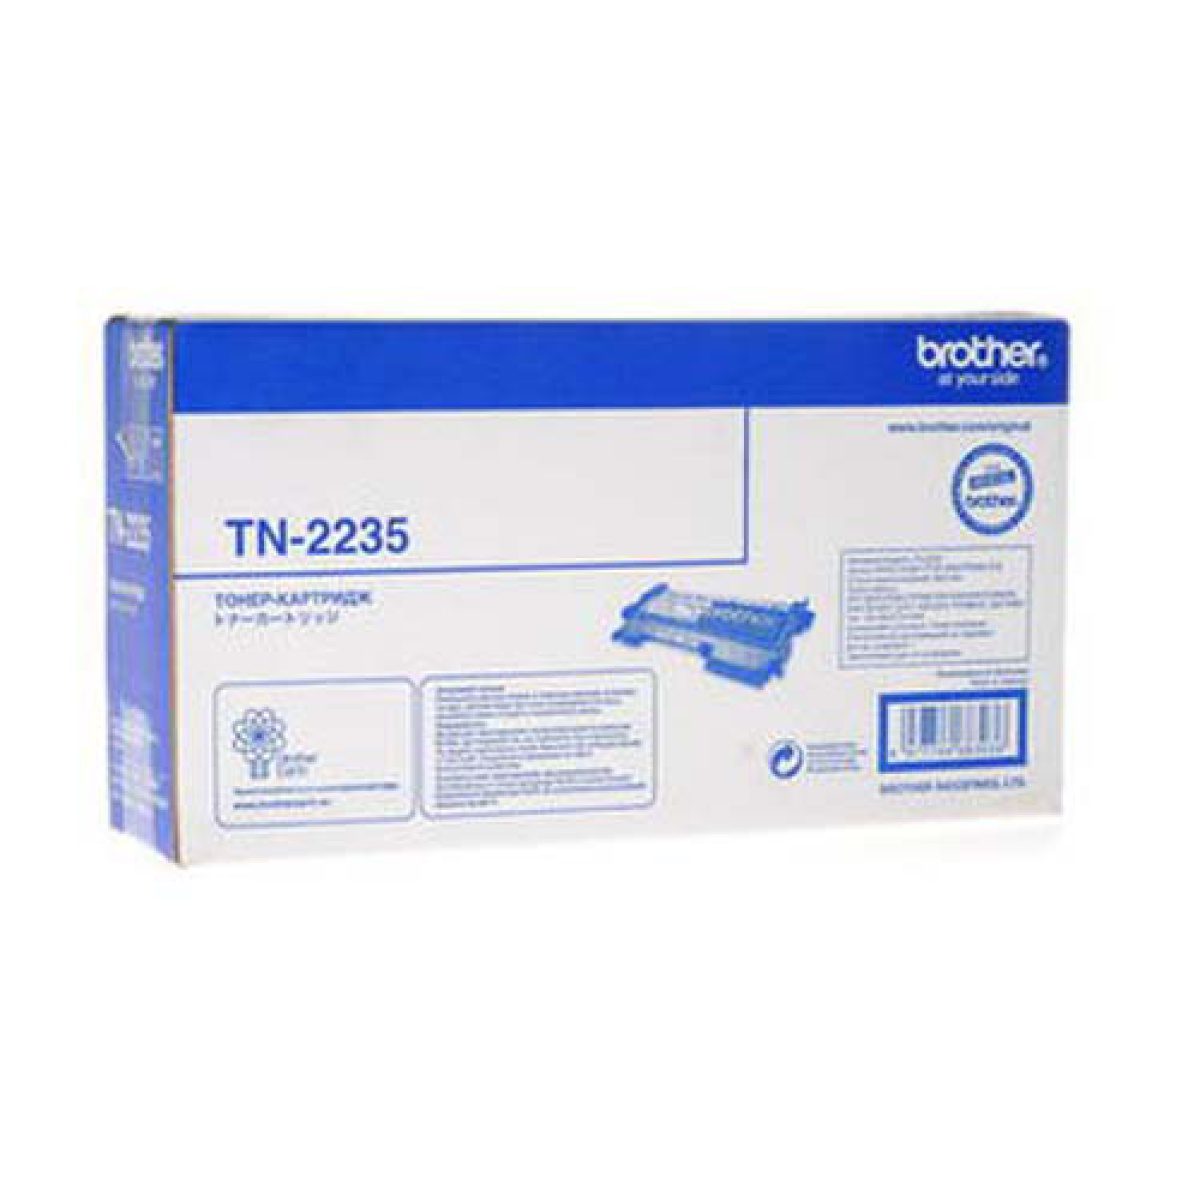 TN-2235